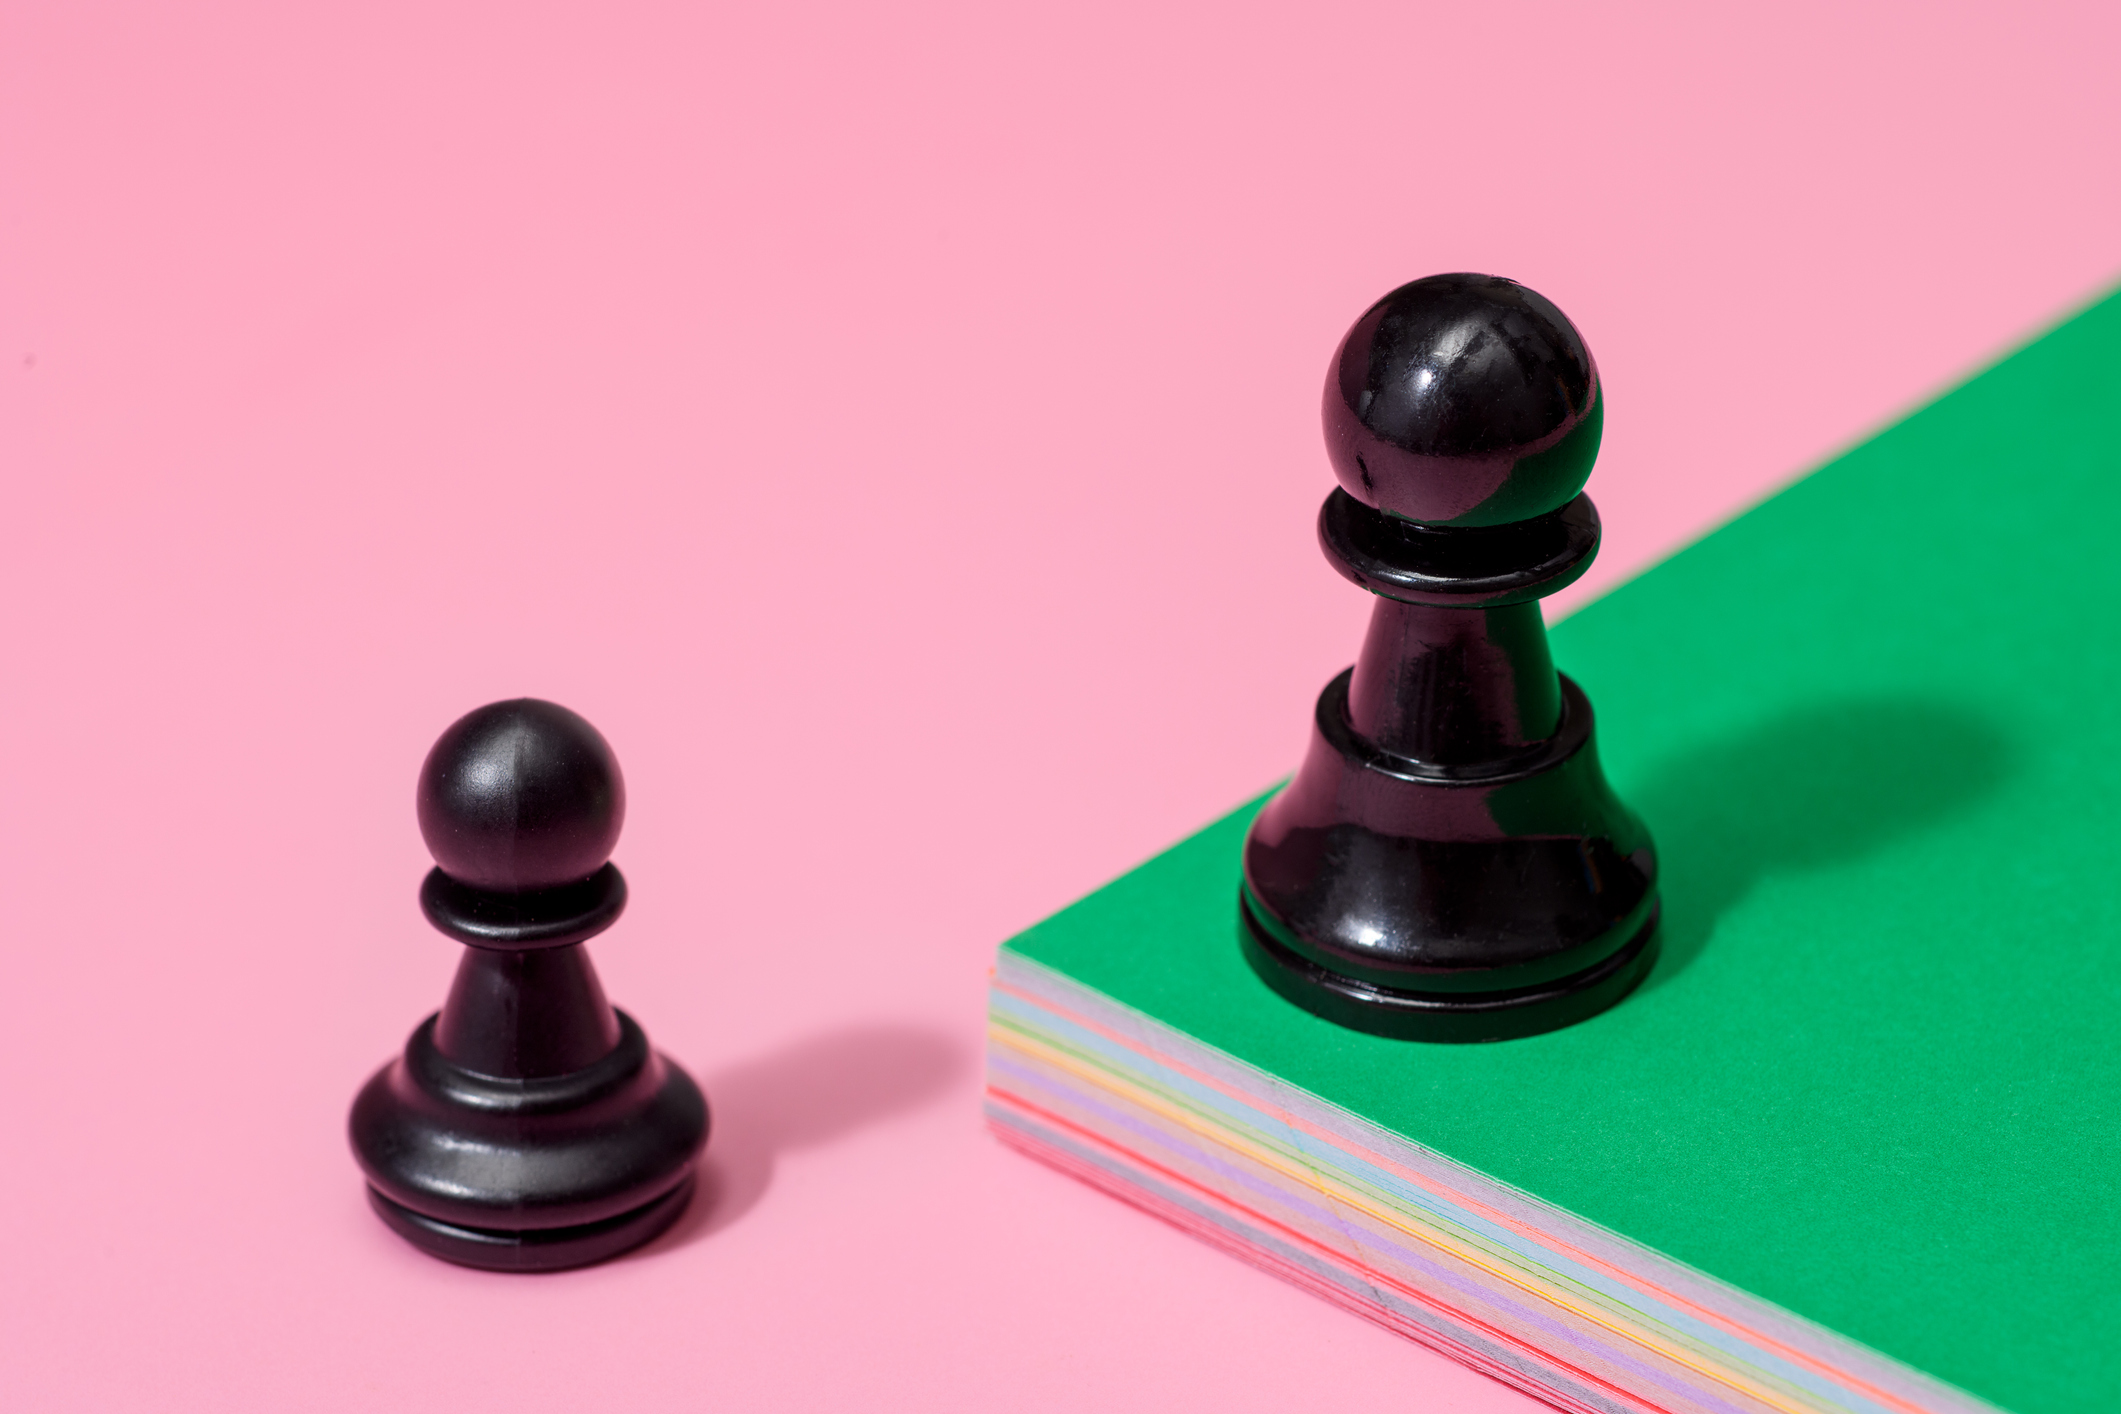 un peón de ajedrez en la plataforma elevada verde, uno en la plataforma rosa inferior.  startups y caídas del mercado